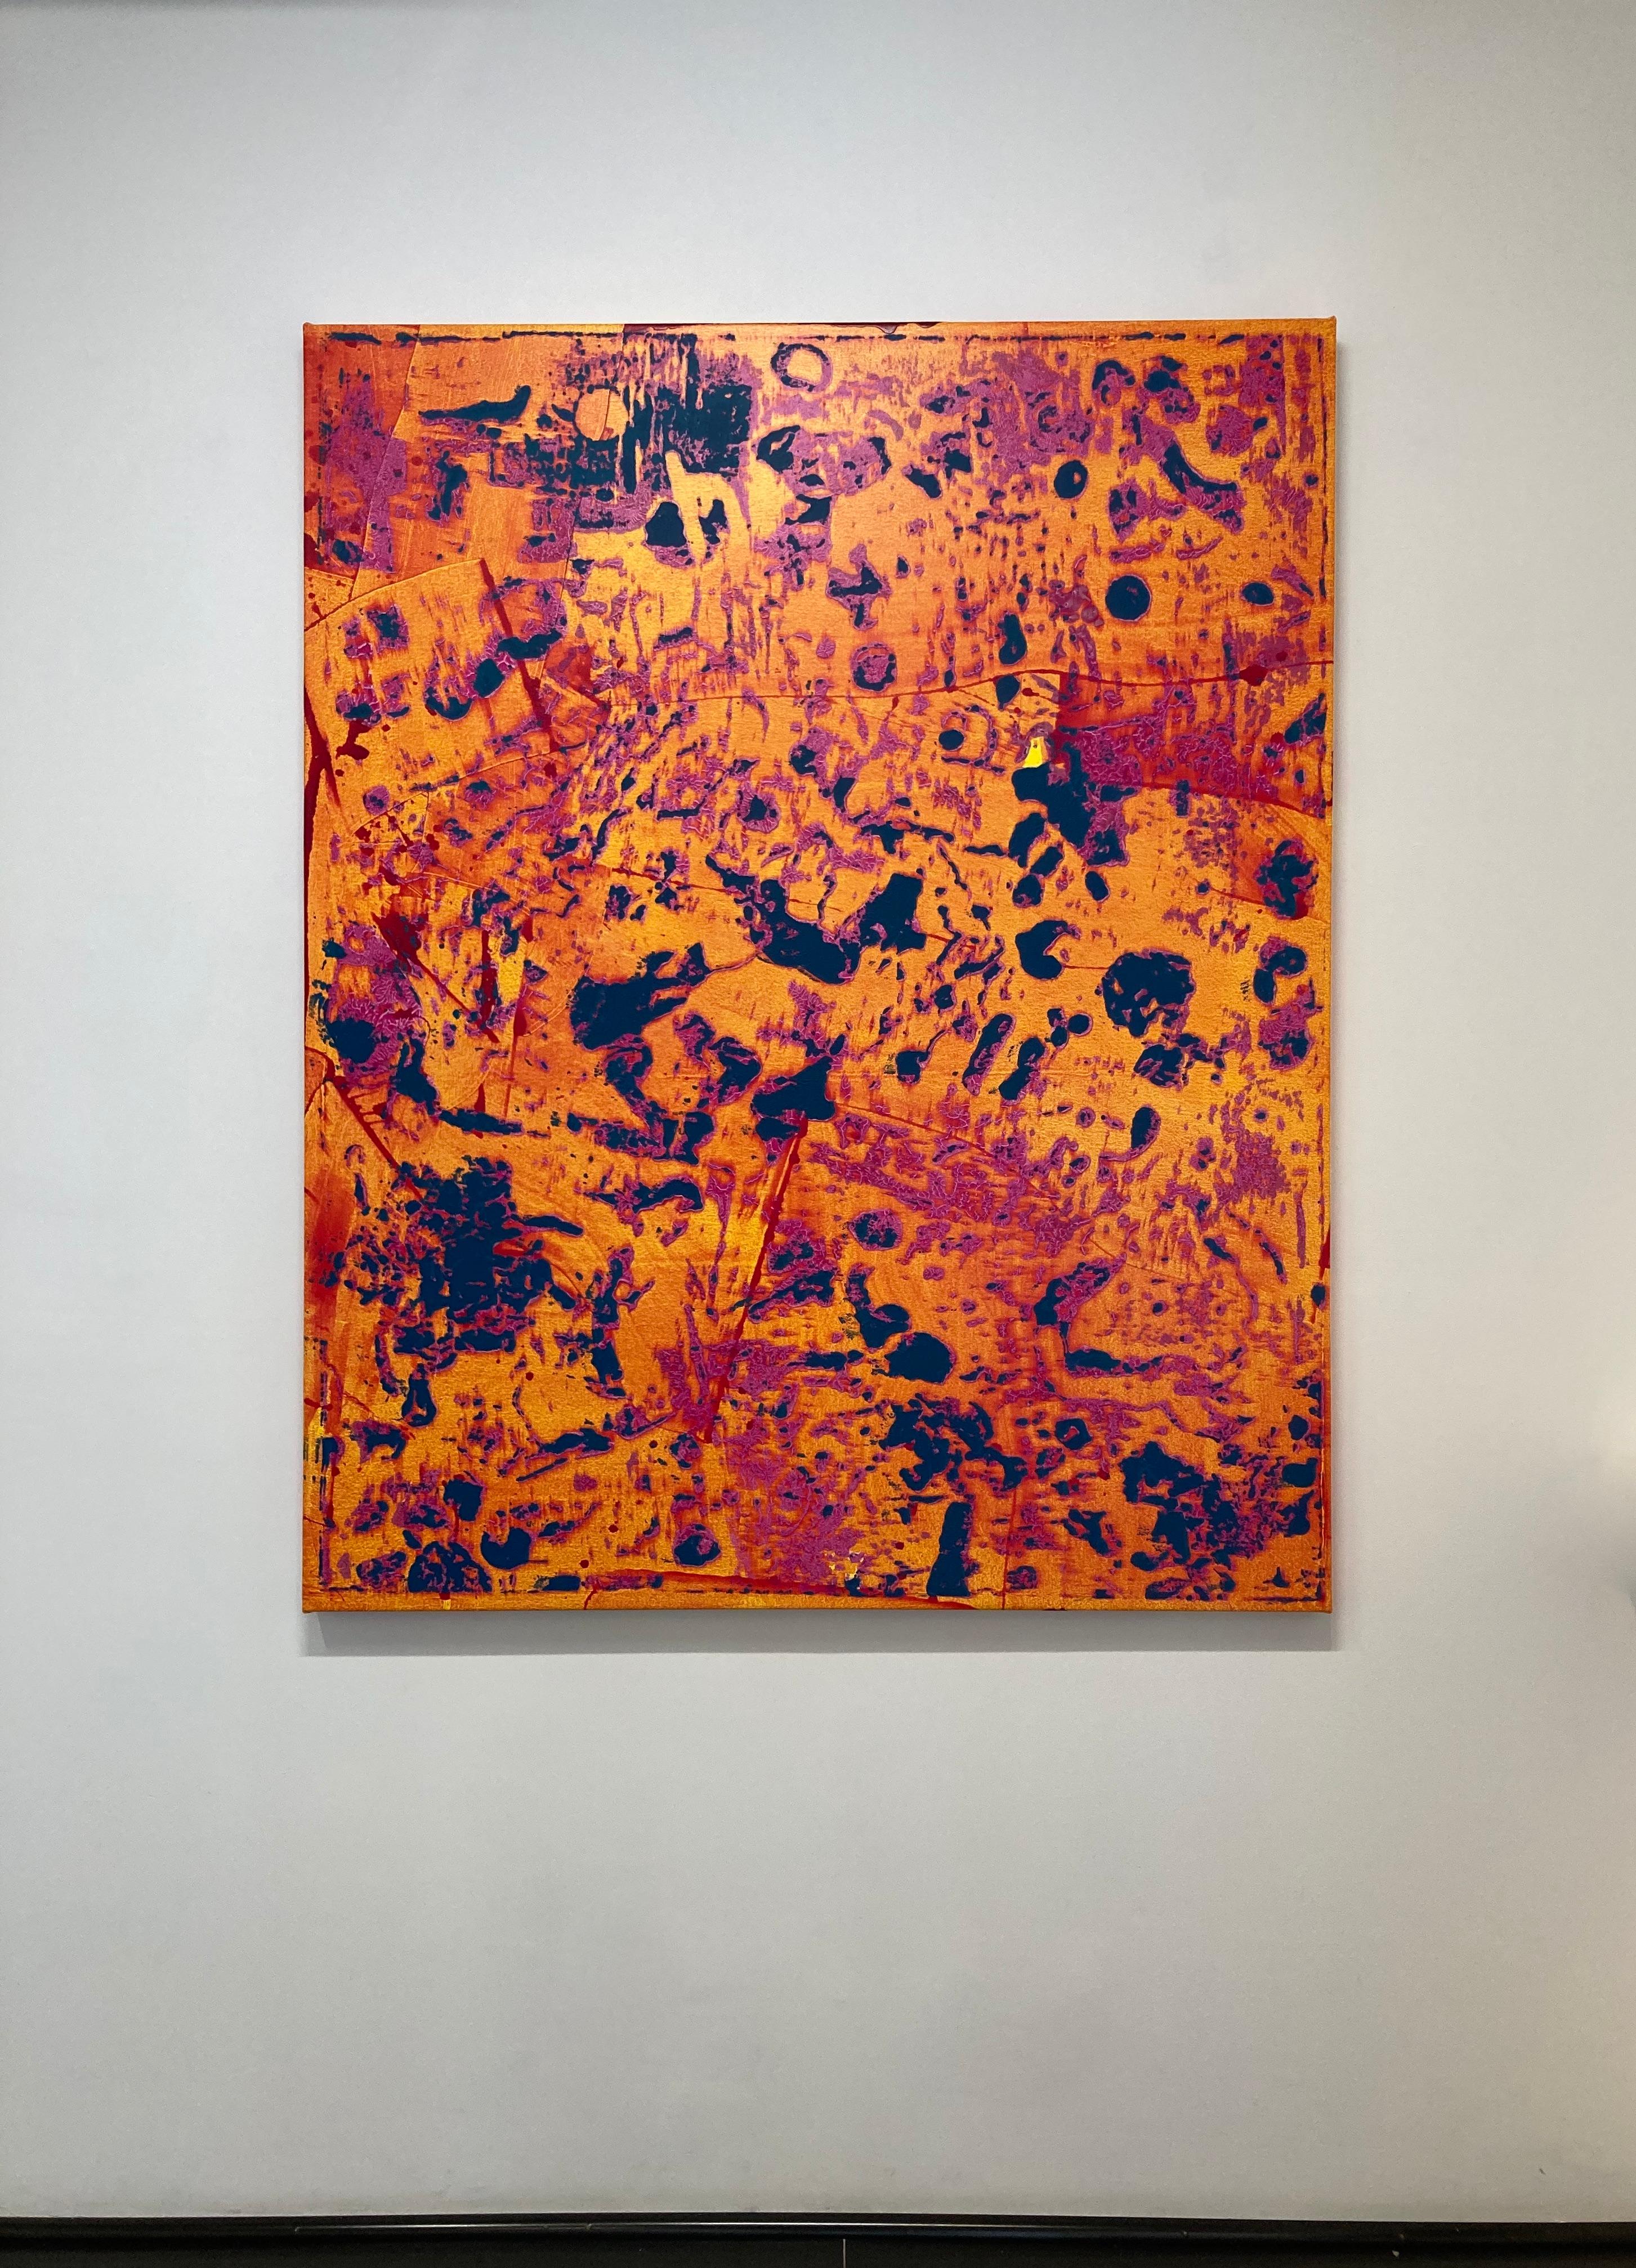 Großes vertikales abstraktes Gemälde in leuchtendem Orange, Gelb, Rosa und Marineblau, P20-0105 – Painting von Stephen Maine